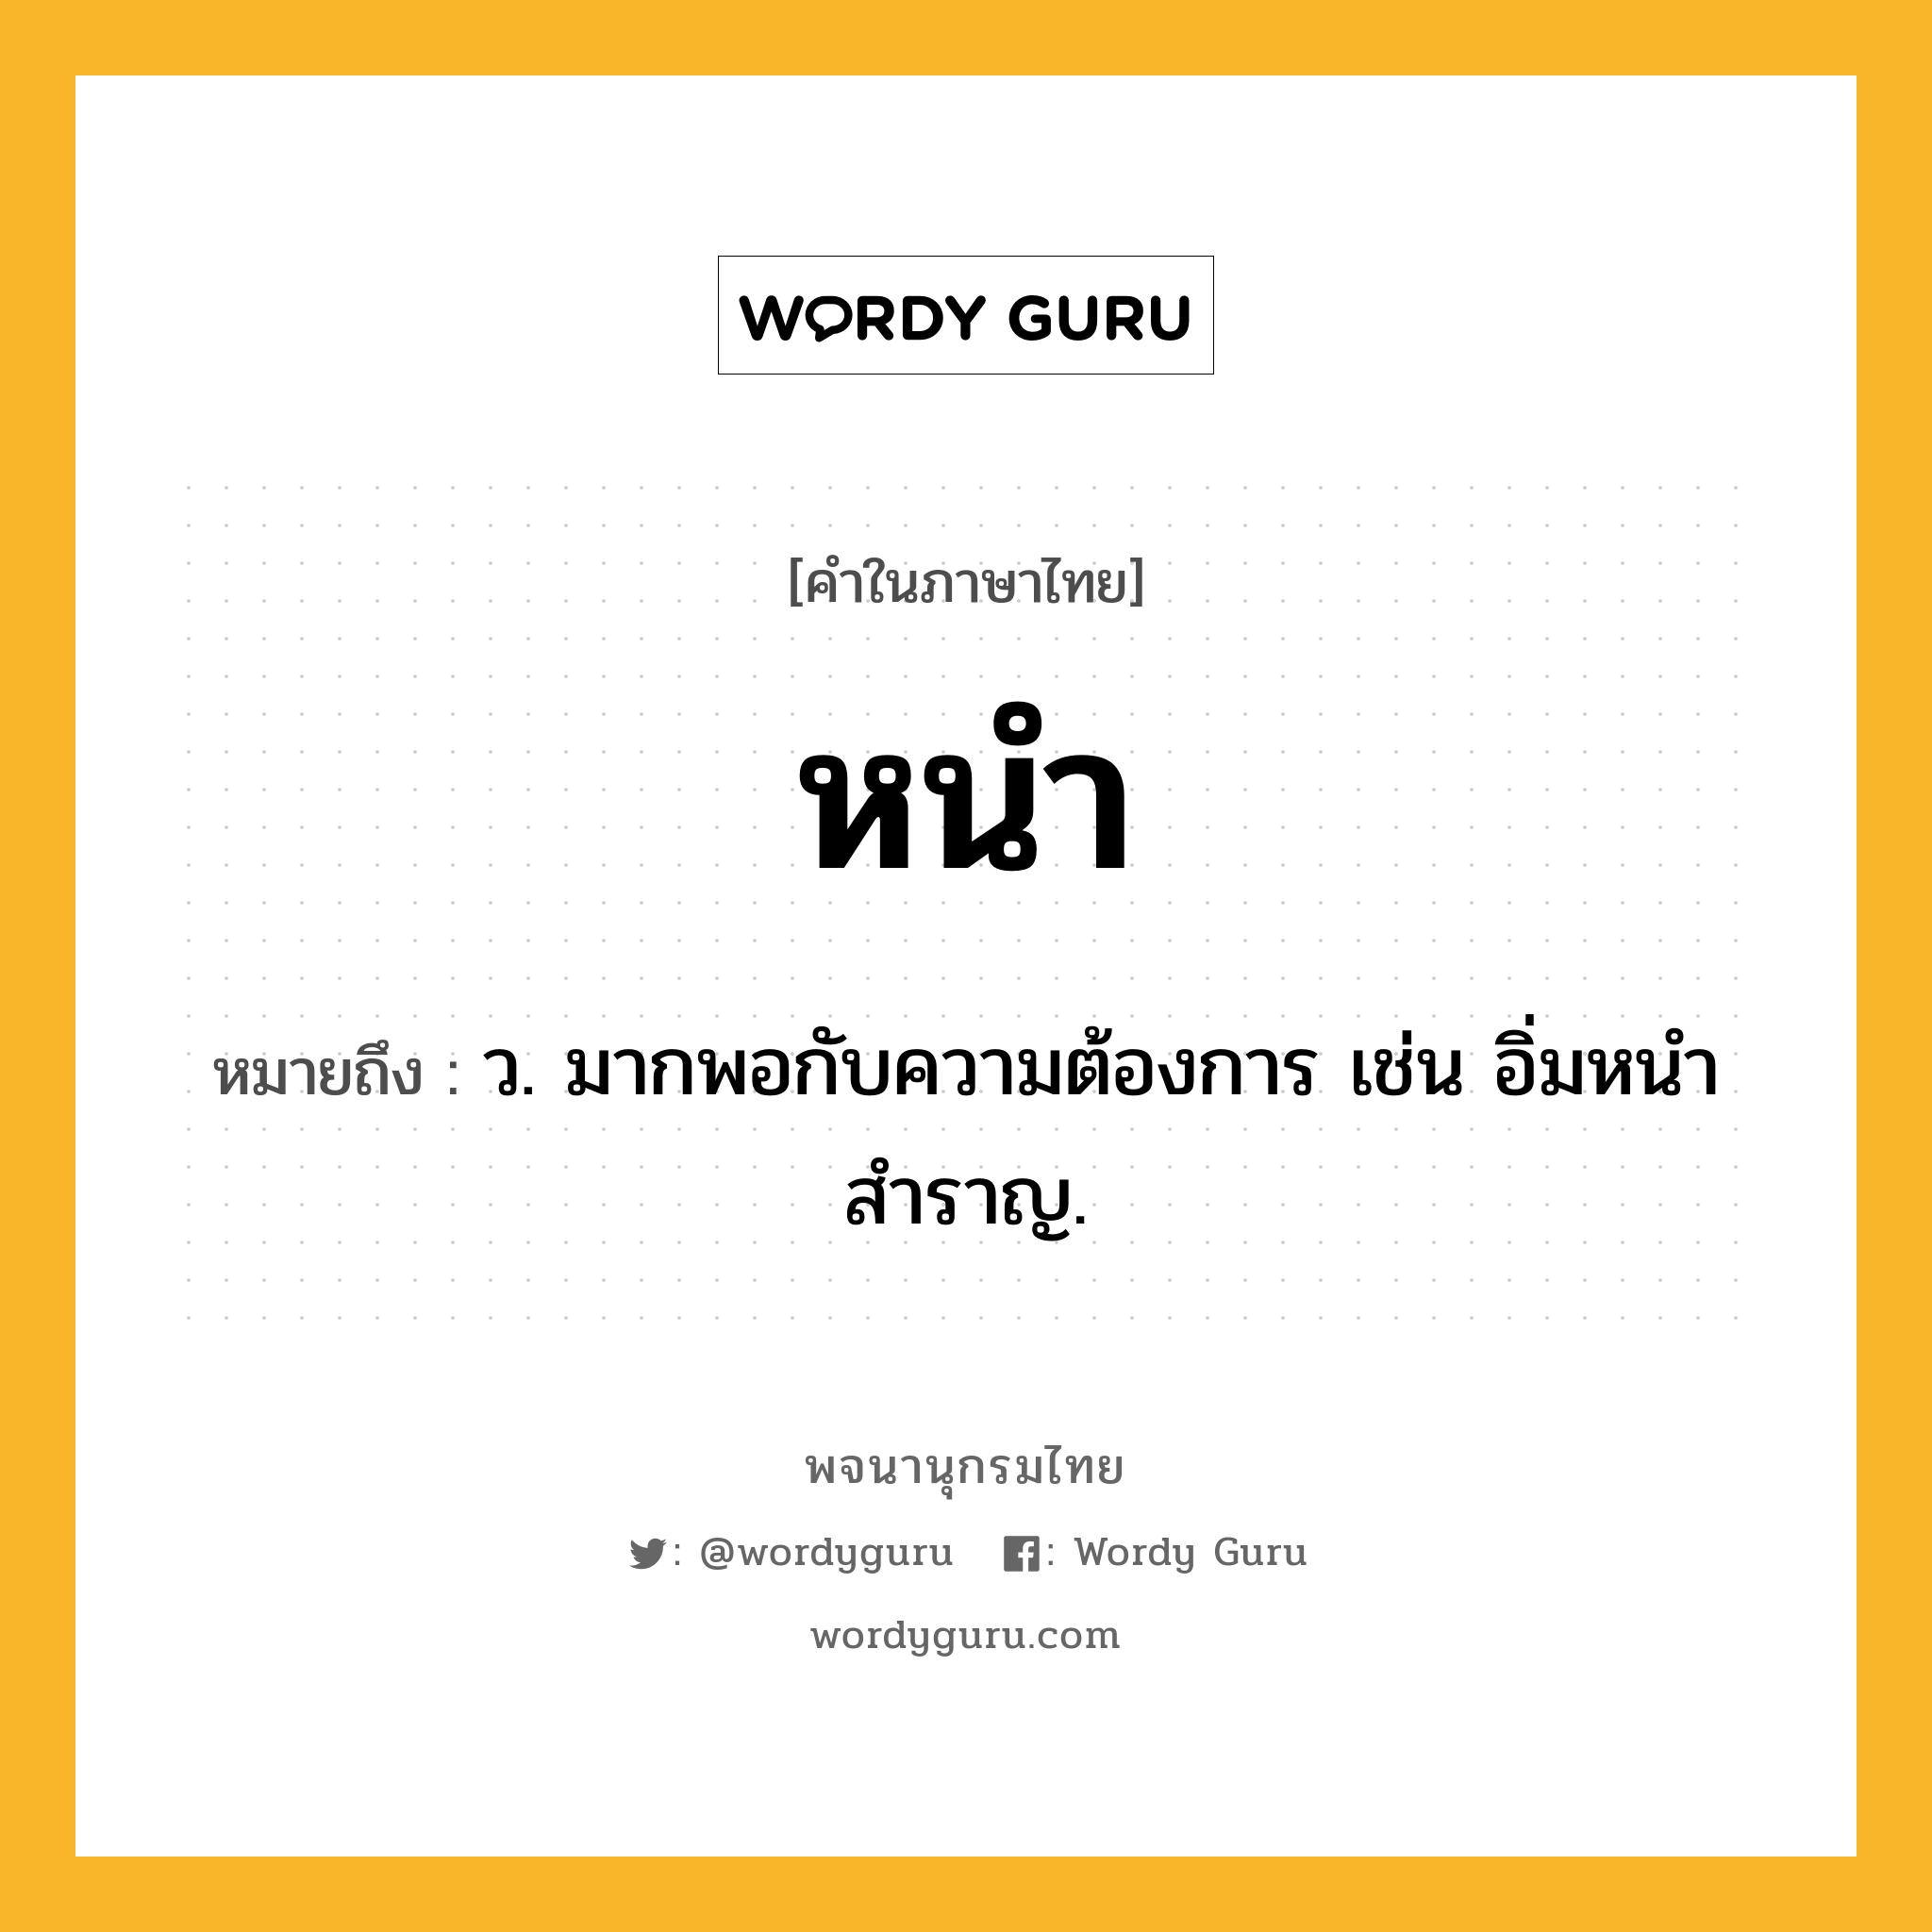 หนำ หมายถึงอะไร?, คำในภาษาไทย หนำ หมายถึง ว. มากพอกับความต้องการ เช่น อิ่มหนำสำราญ.